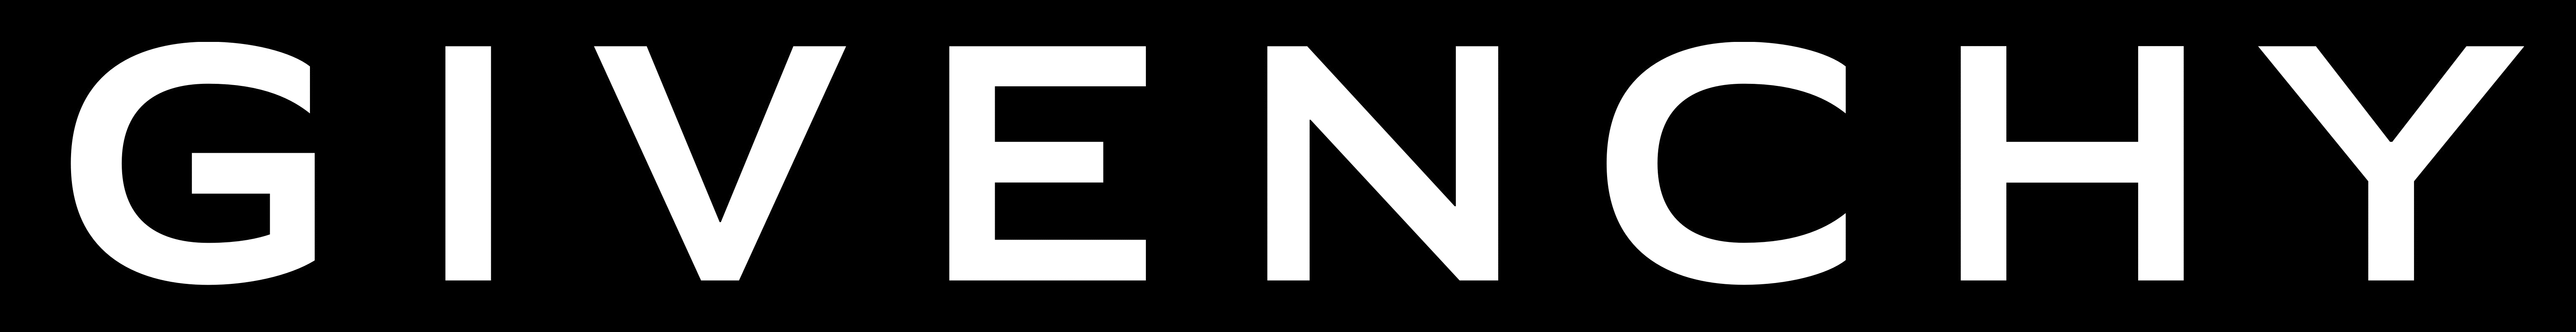 Givenchy Logo - Givenchy – Logos Download